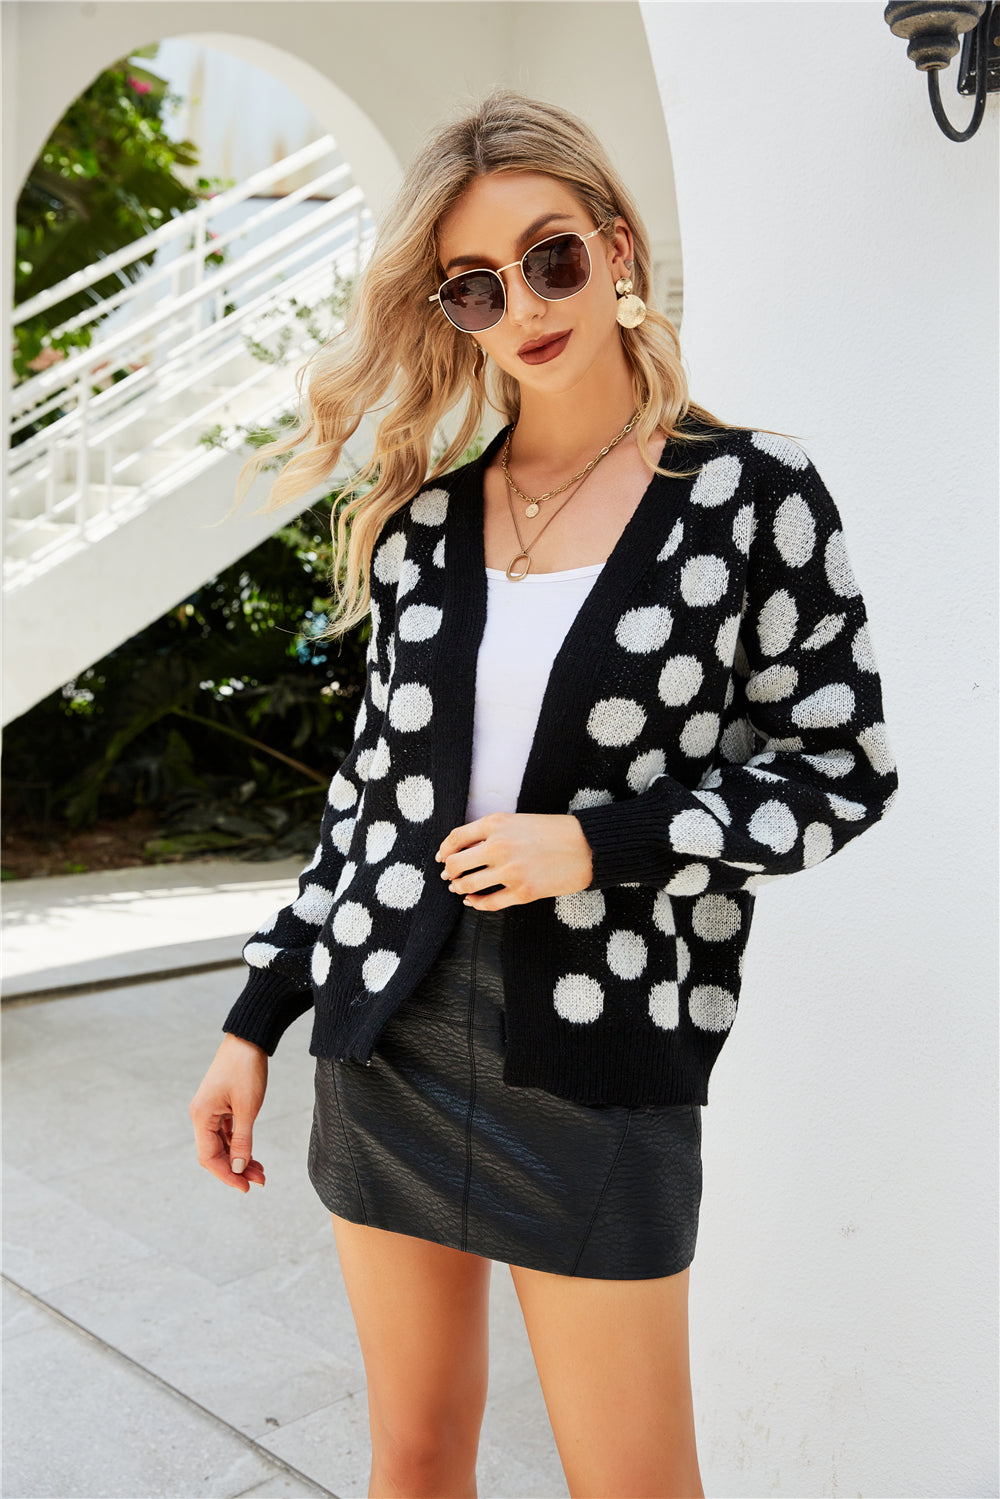 YESFASHION Women Clothing Dot Large Size Knit Cardigan Jacket Coats